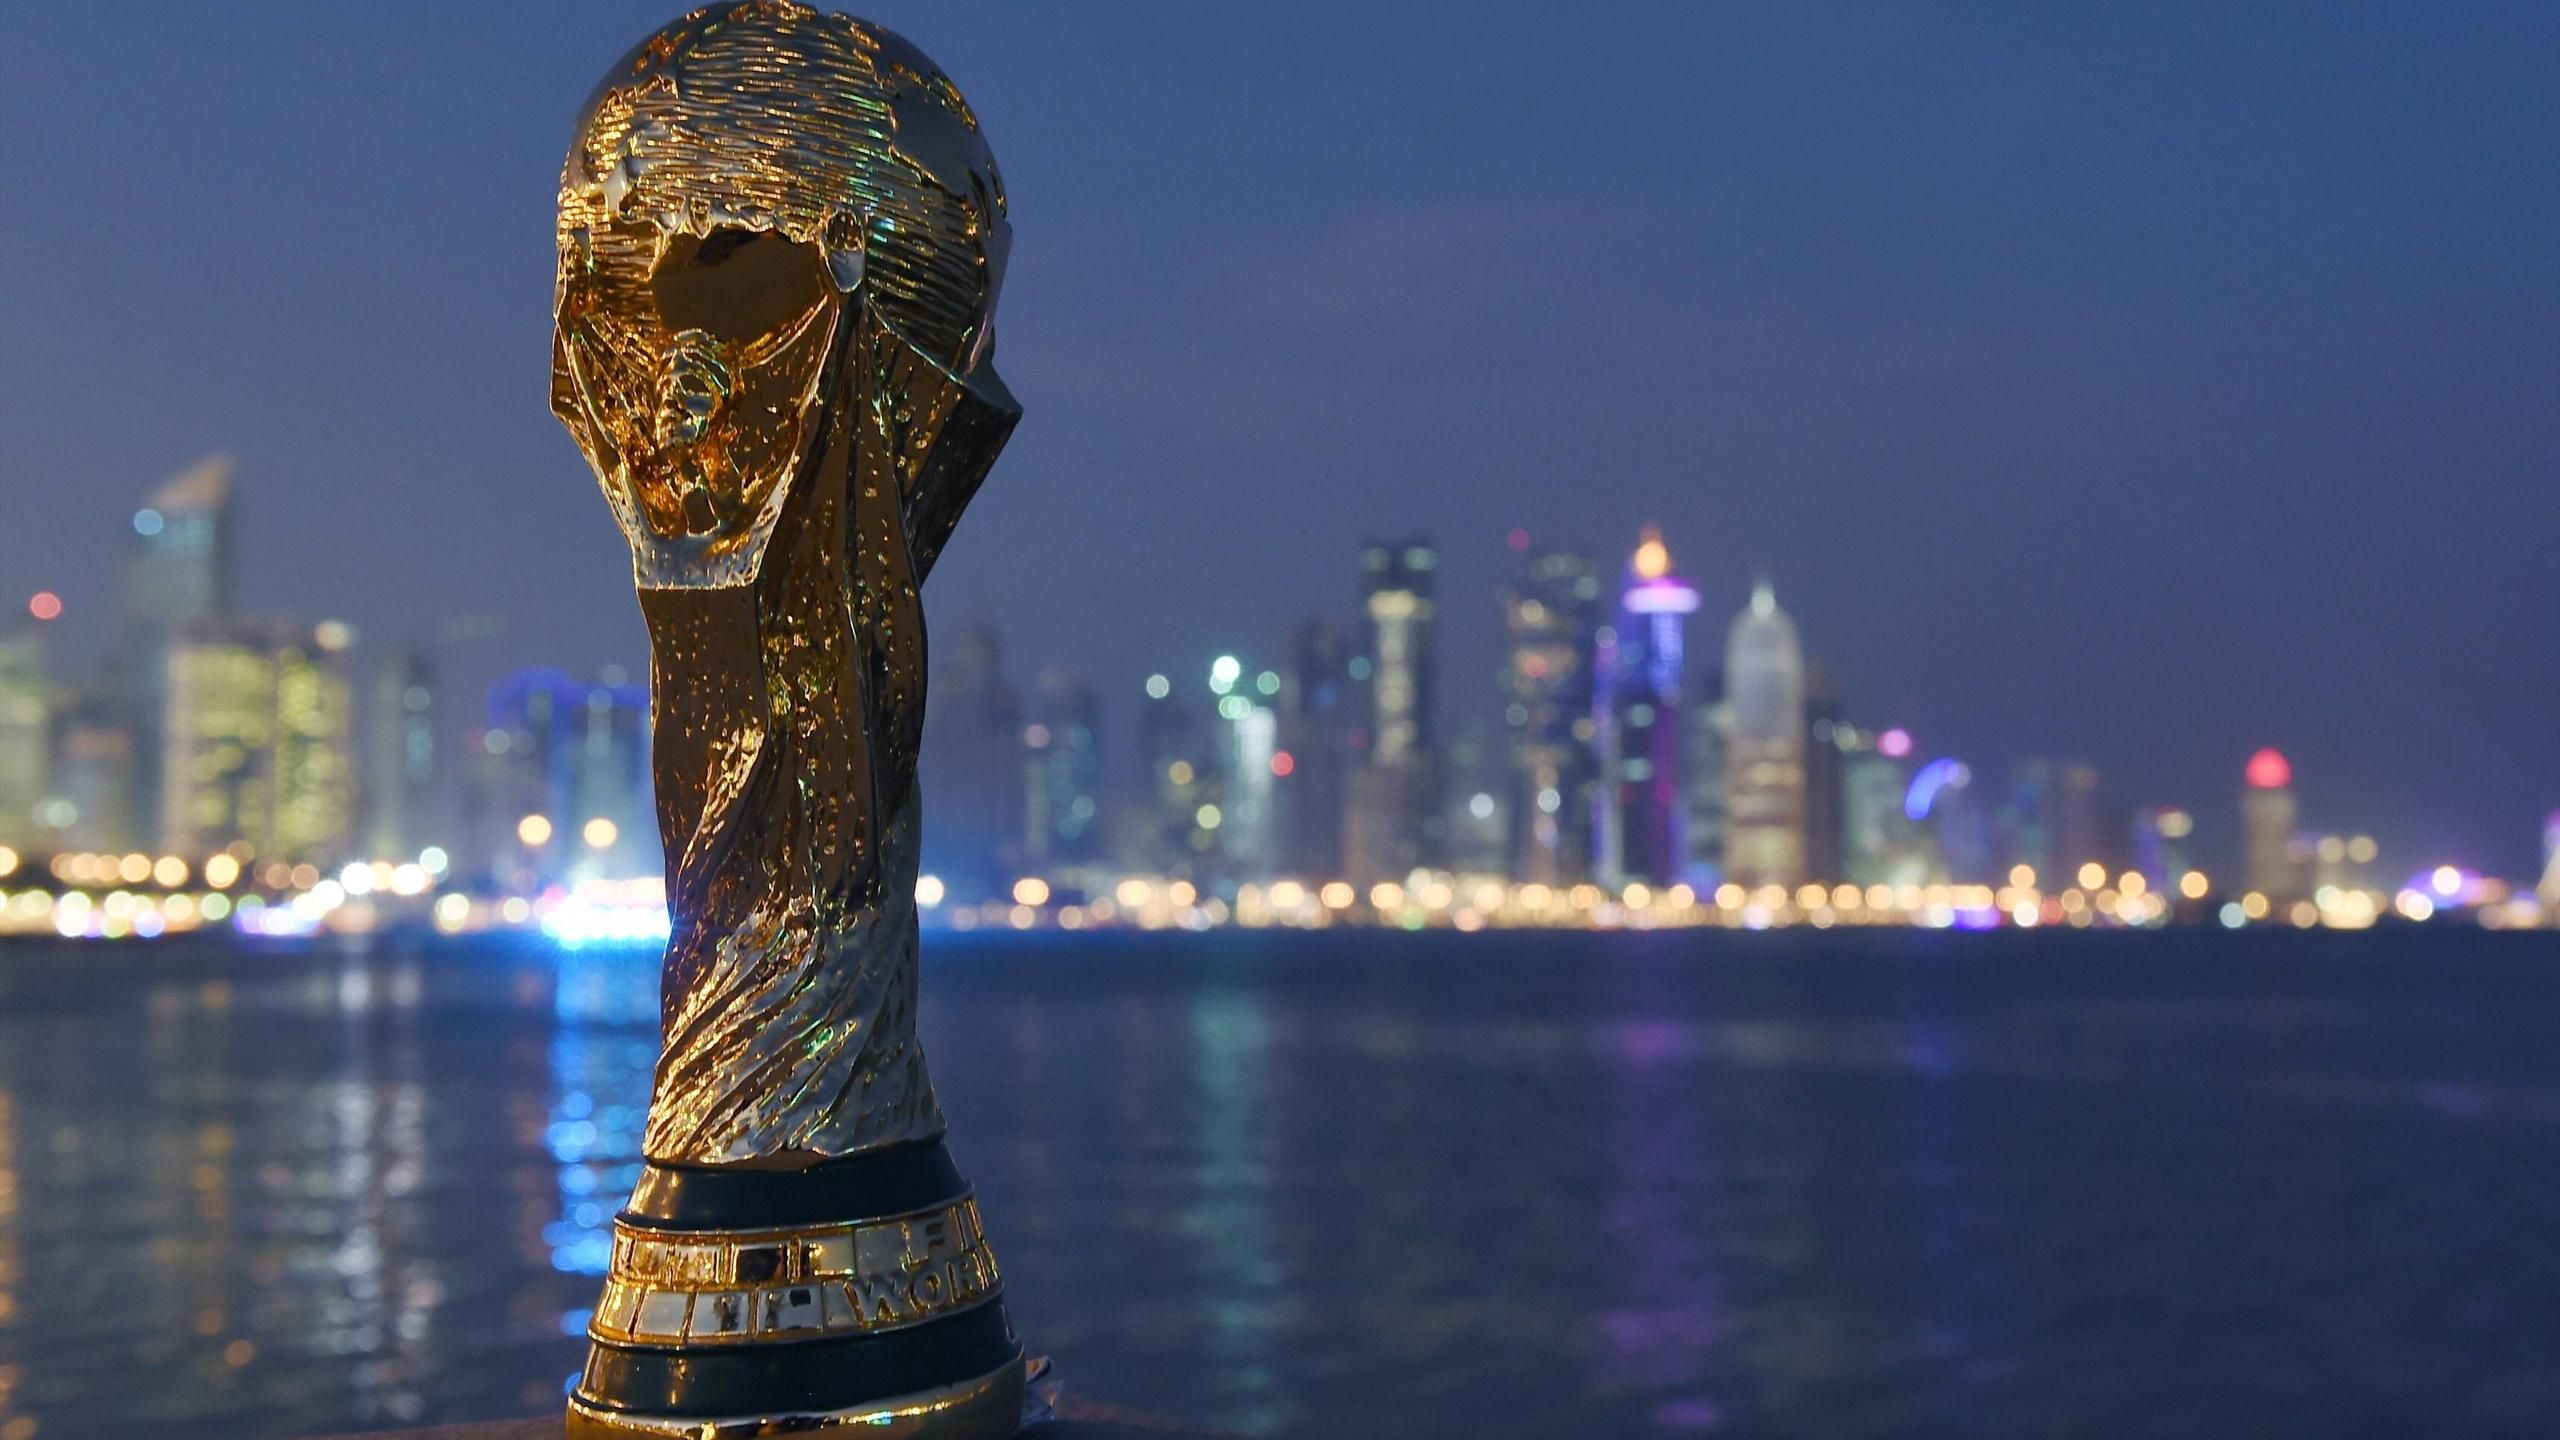 2 hours ago · le programme des matches amicaux des sélections qualifiées pour le mondial en italique, les équipes qui participent au mondial. Coupe du monde Qatar 2022 : La FIFA propose un calendrier dense - Le